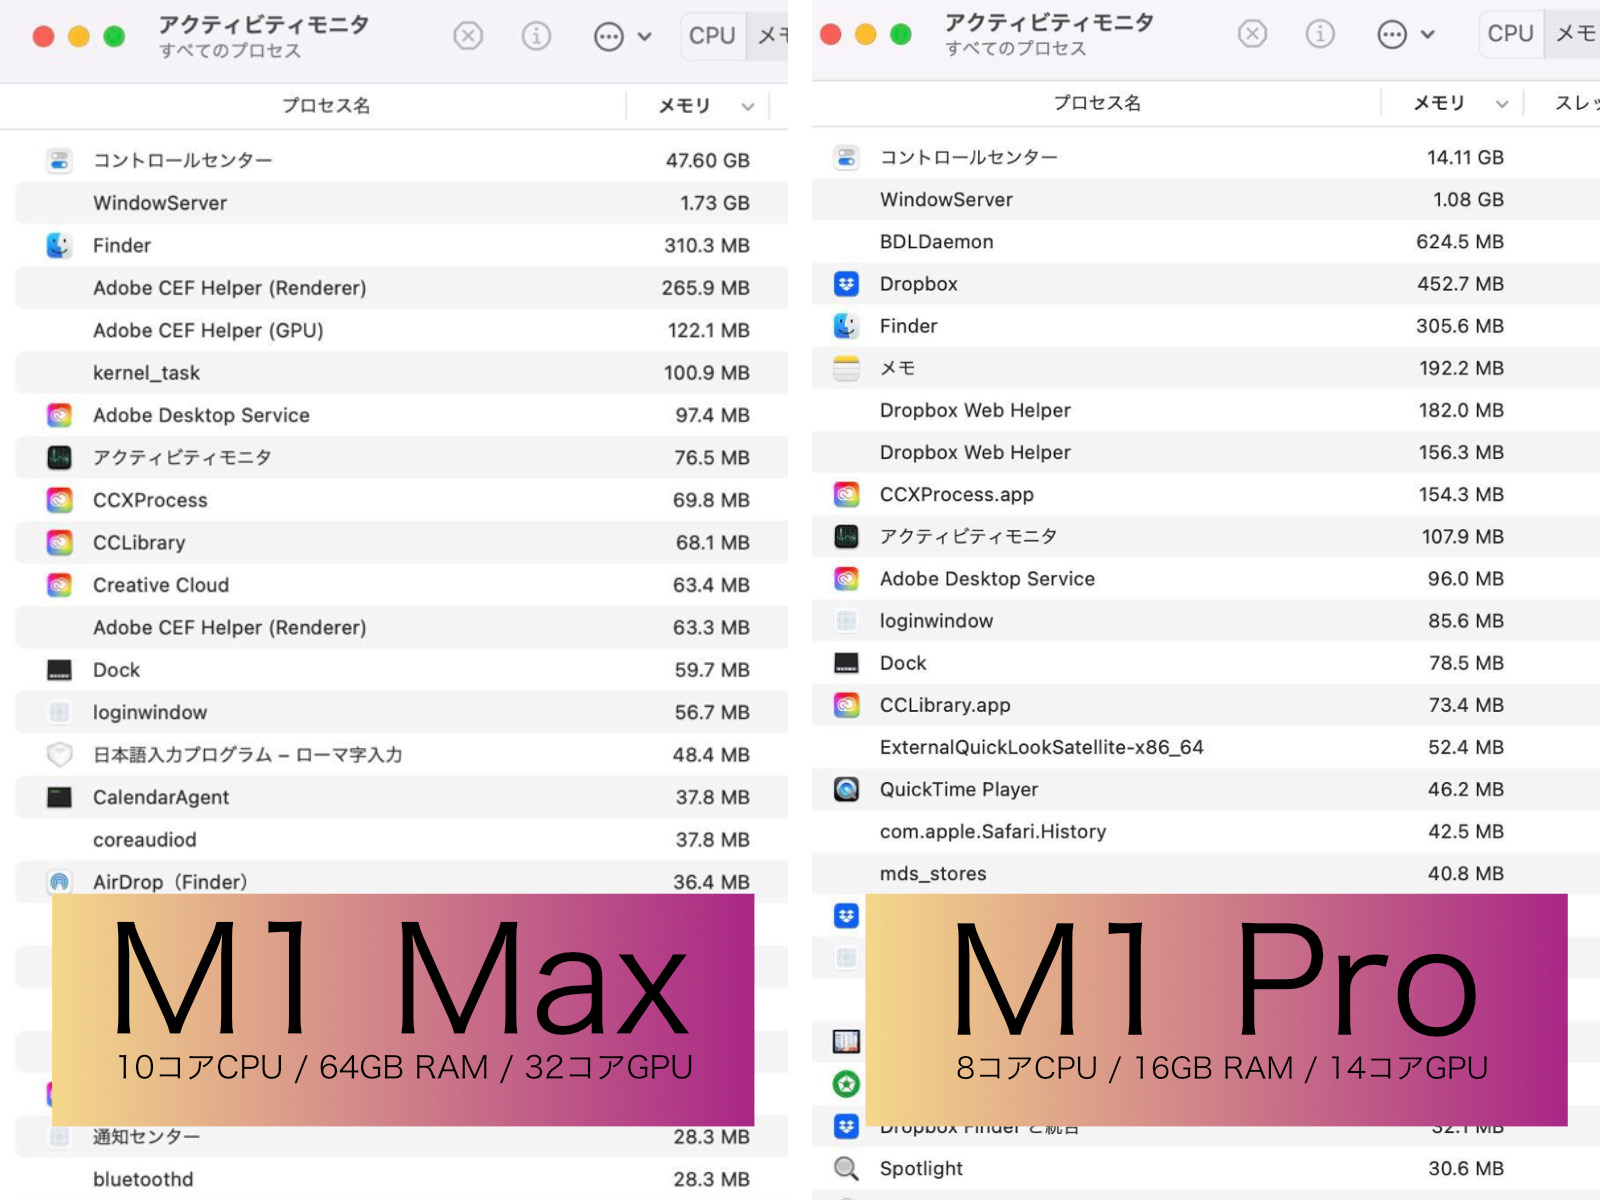 M1Max-M1Pro-Comparison.jpg